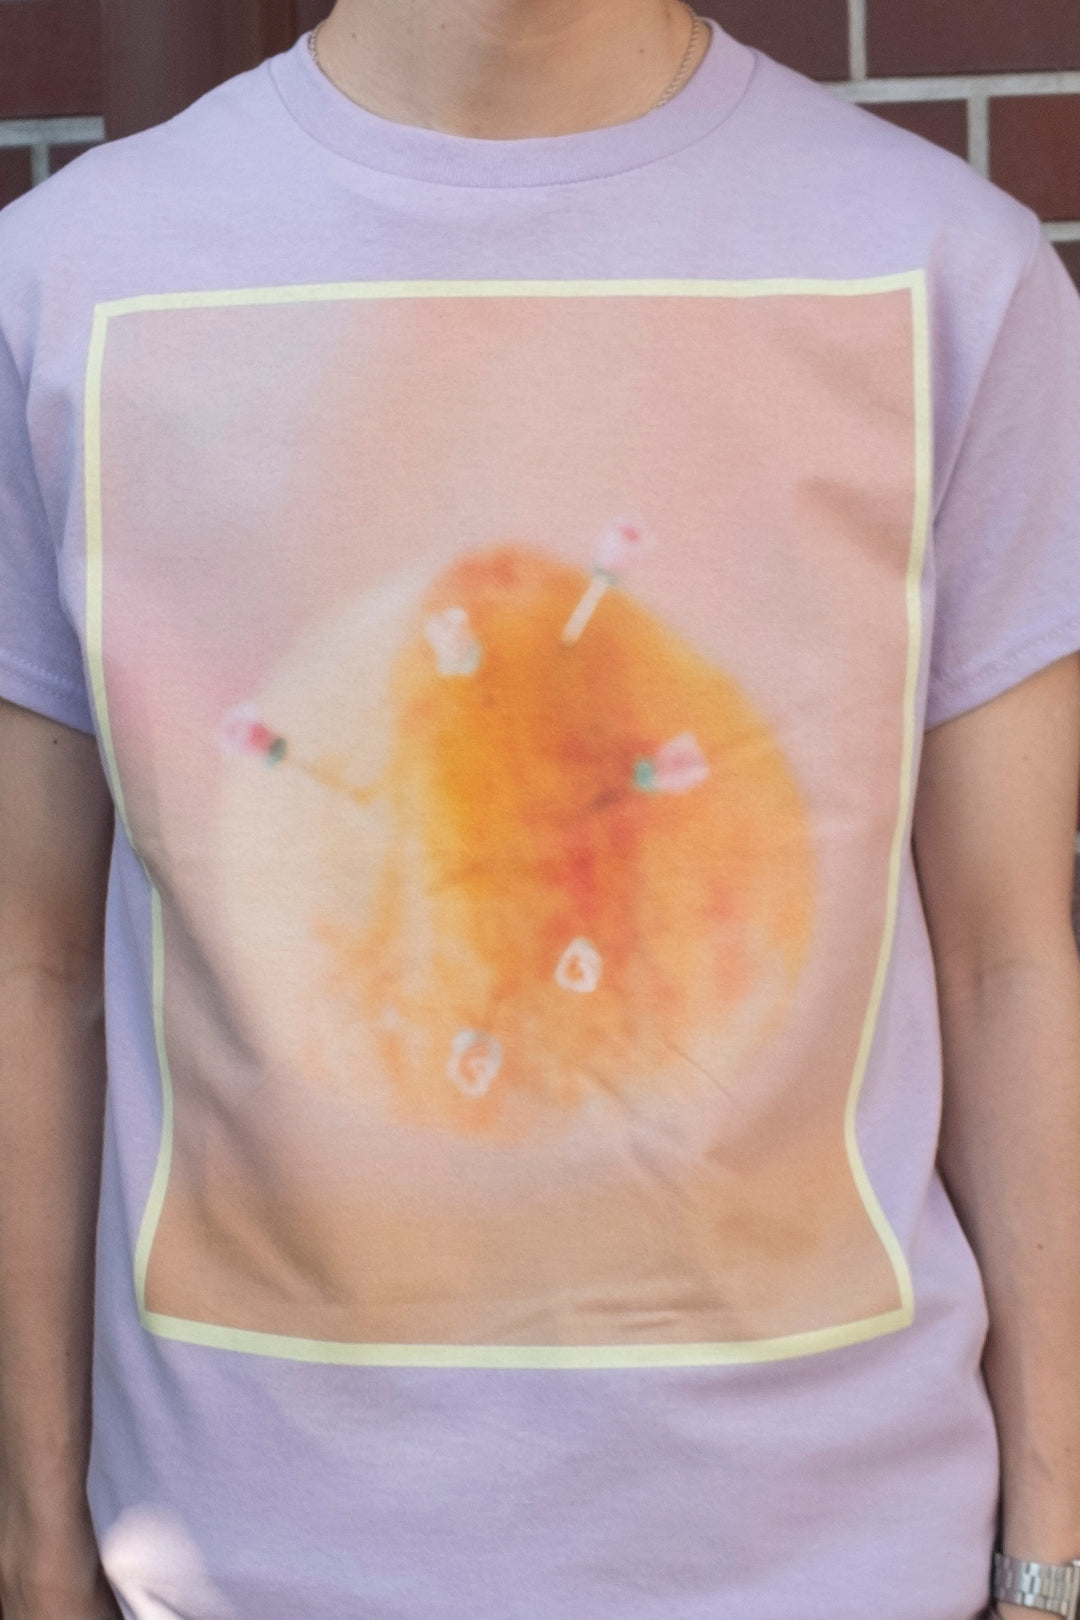 大西日和 #1 printed T-shirt